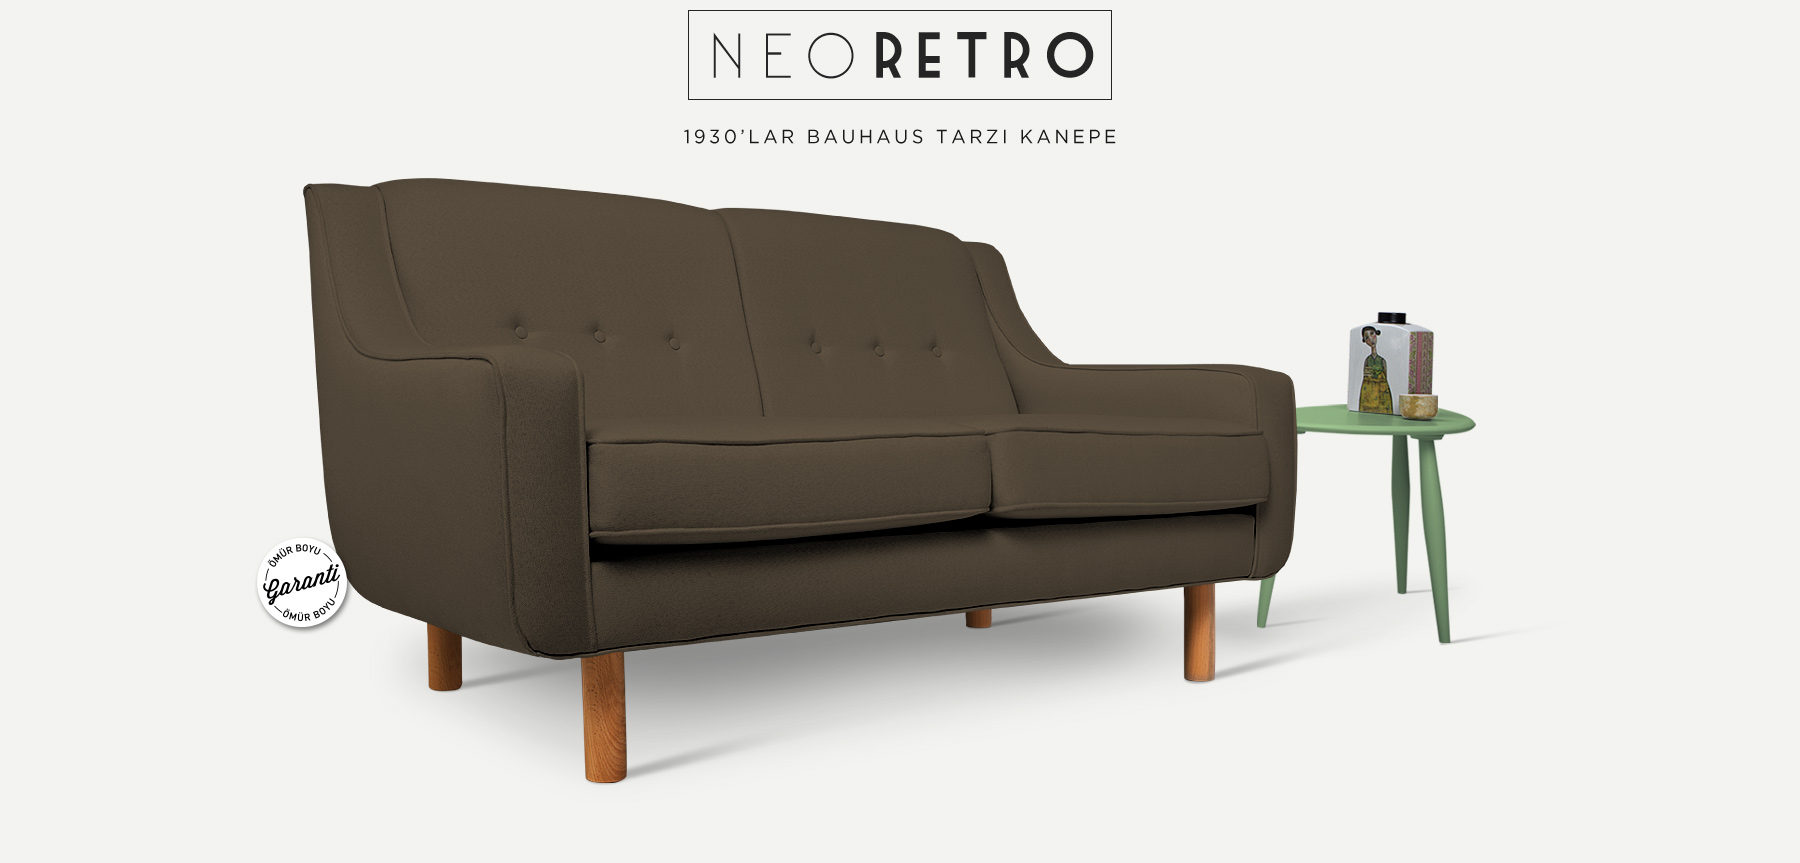 Neoretro™ İkili Kahverengi Kanepe'in resmi